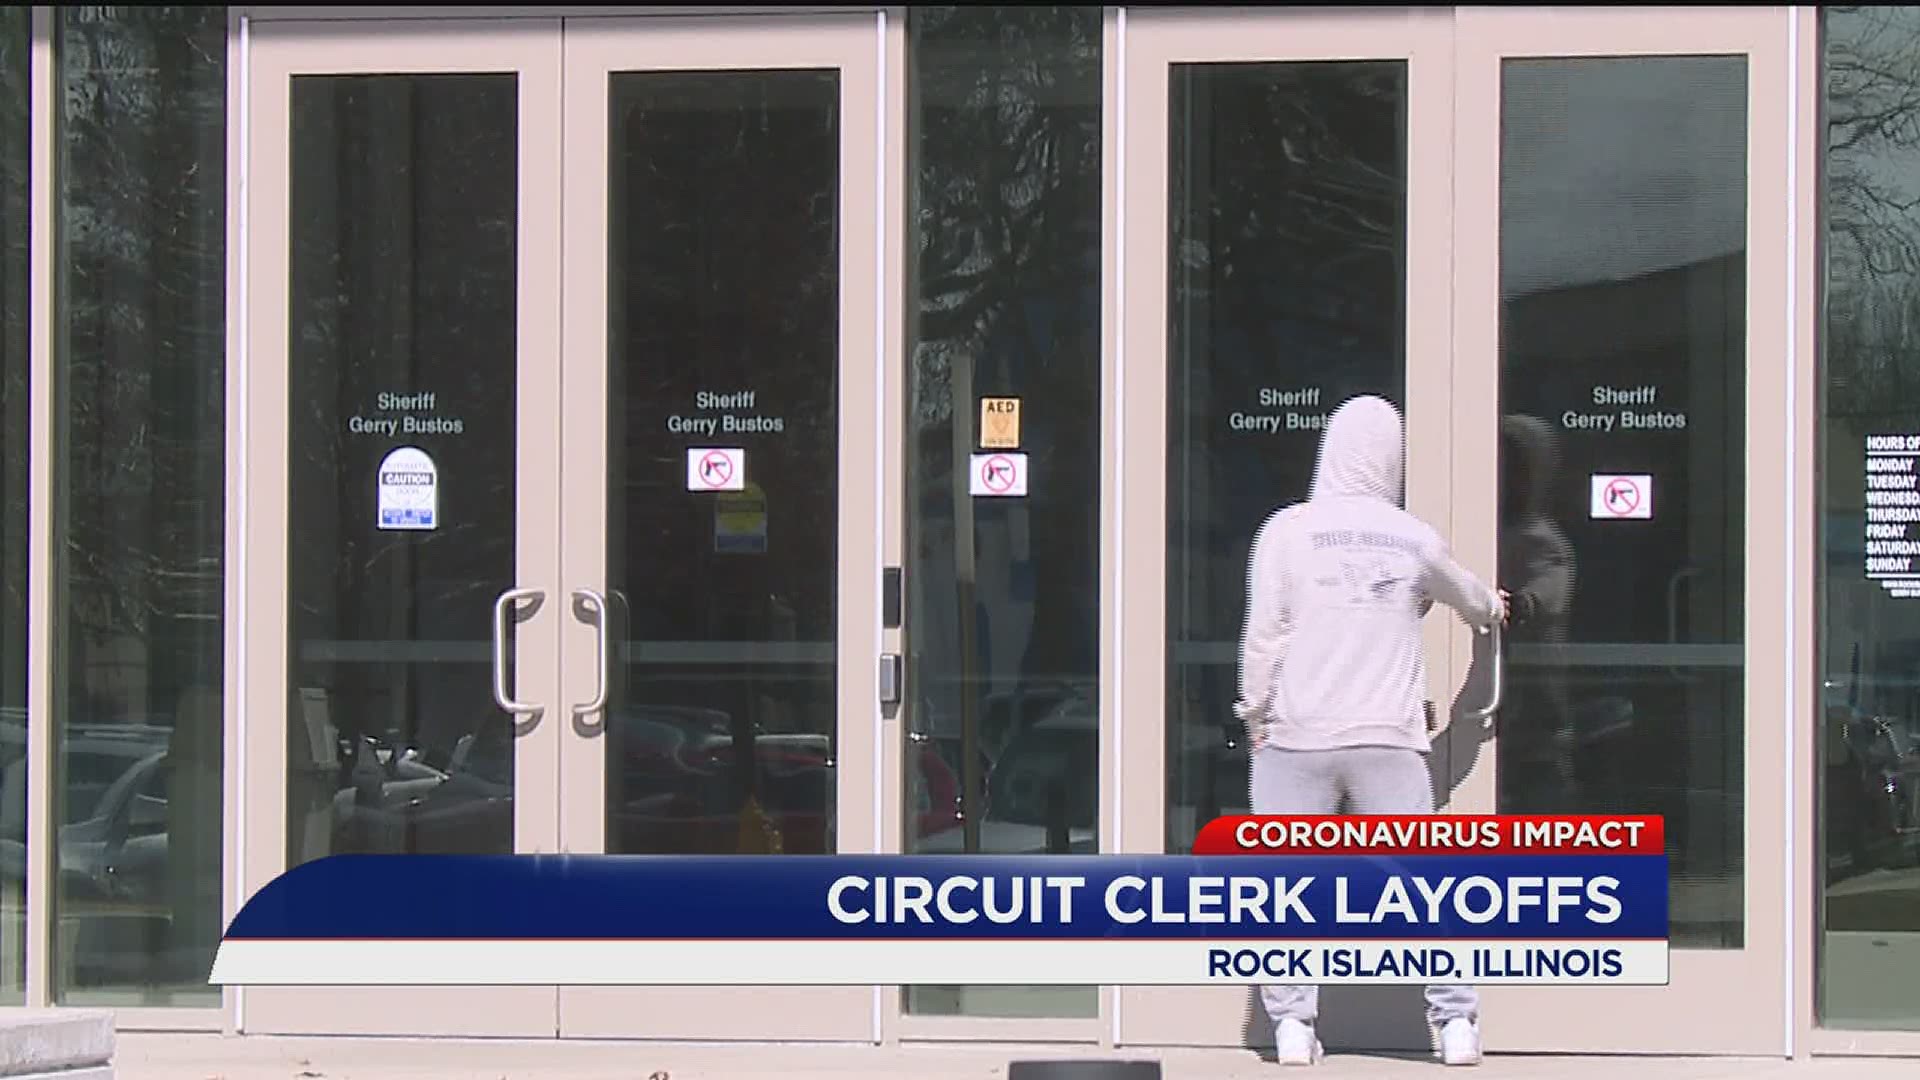 Rock Island County CLerk Layoffs